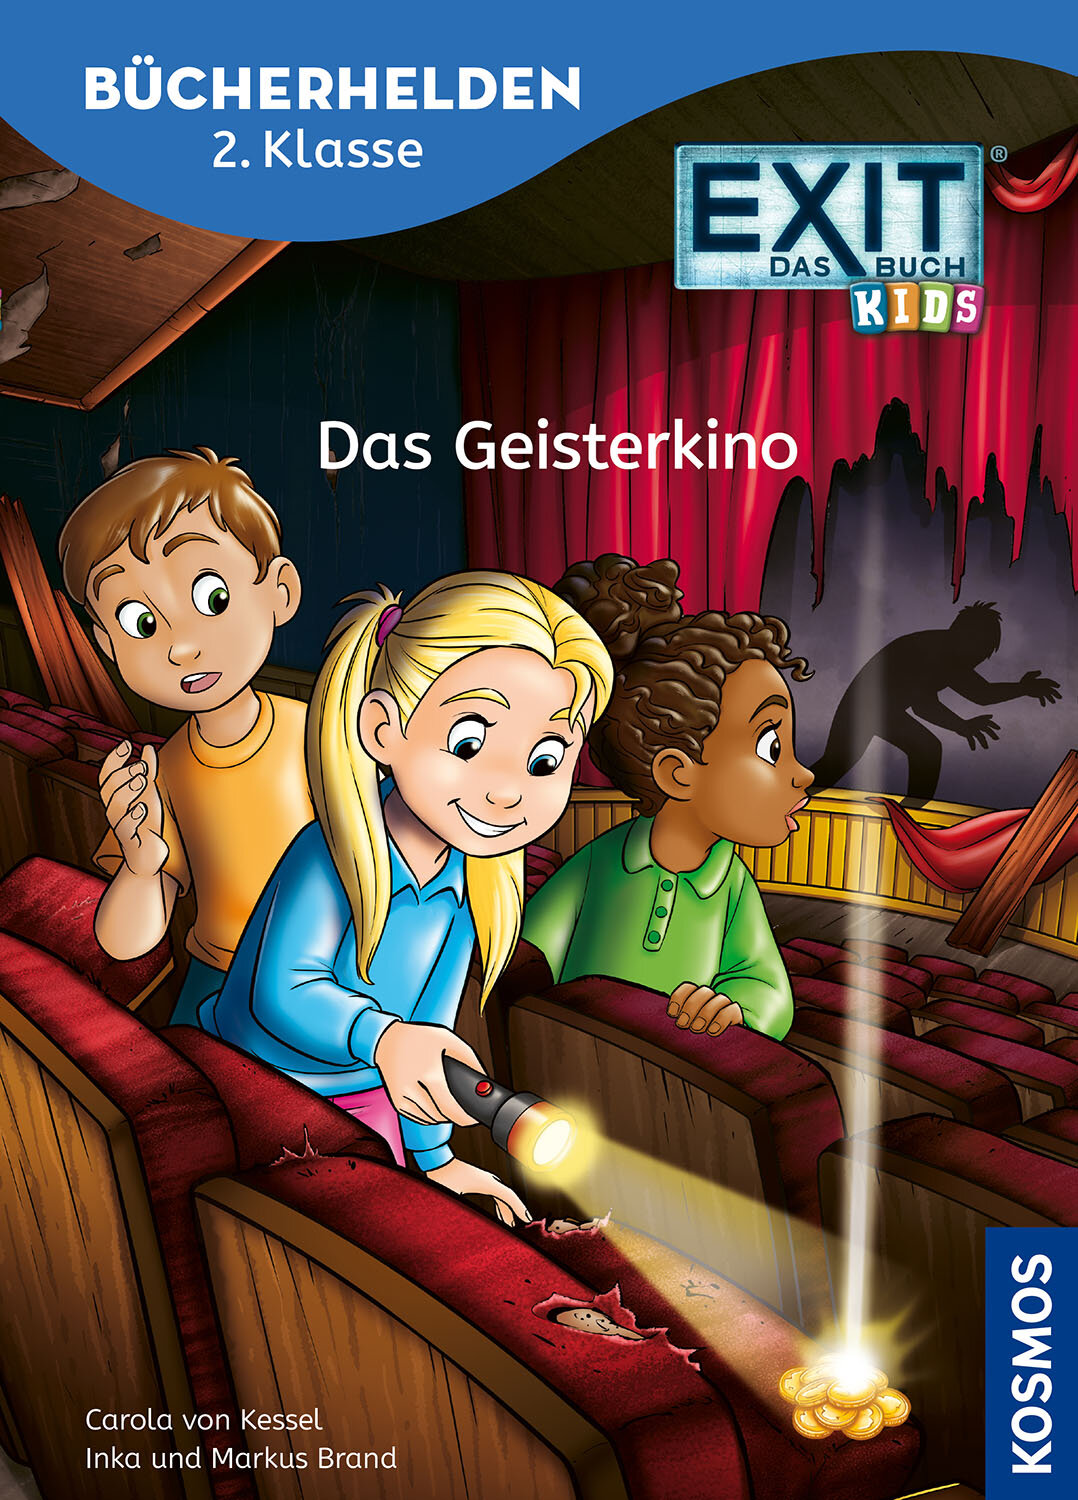 EXIT® - Das Buch  Bücherhelden 2. Klasse  Das Geisterkino